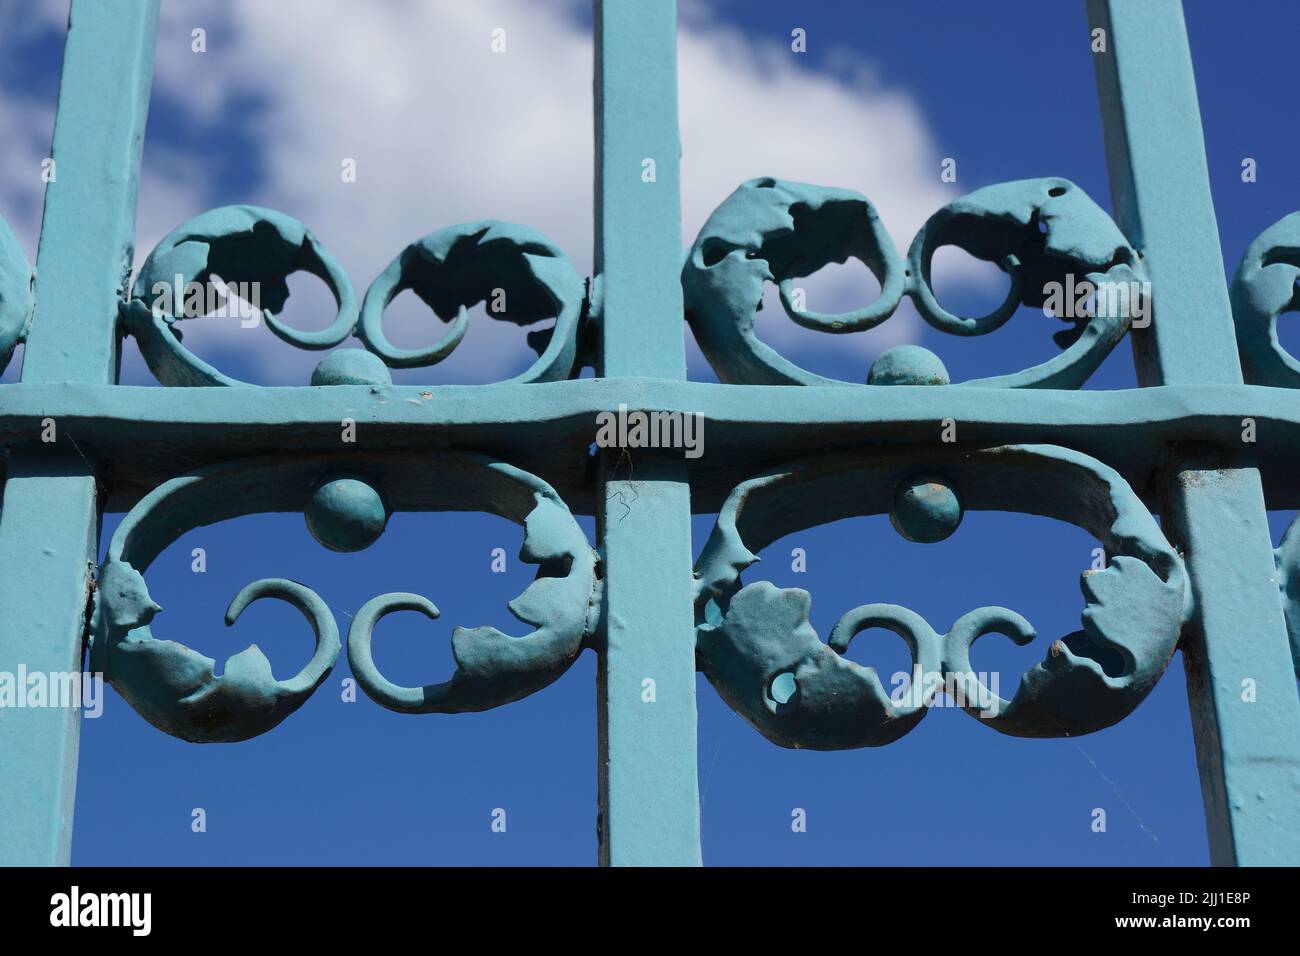 Dettagli del cancello in ferro battuto al castello di Bad Homburg contro il cielo blu. Un'opera d'arte spesso dipinta sopra. Bel gioco di colori e ombre. Foto Stock